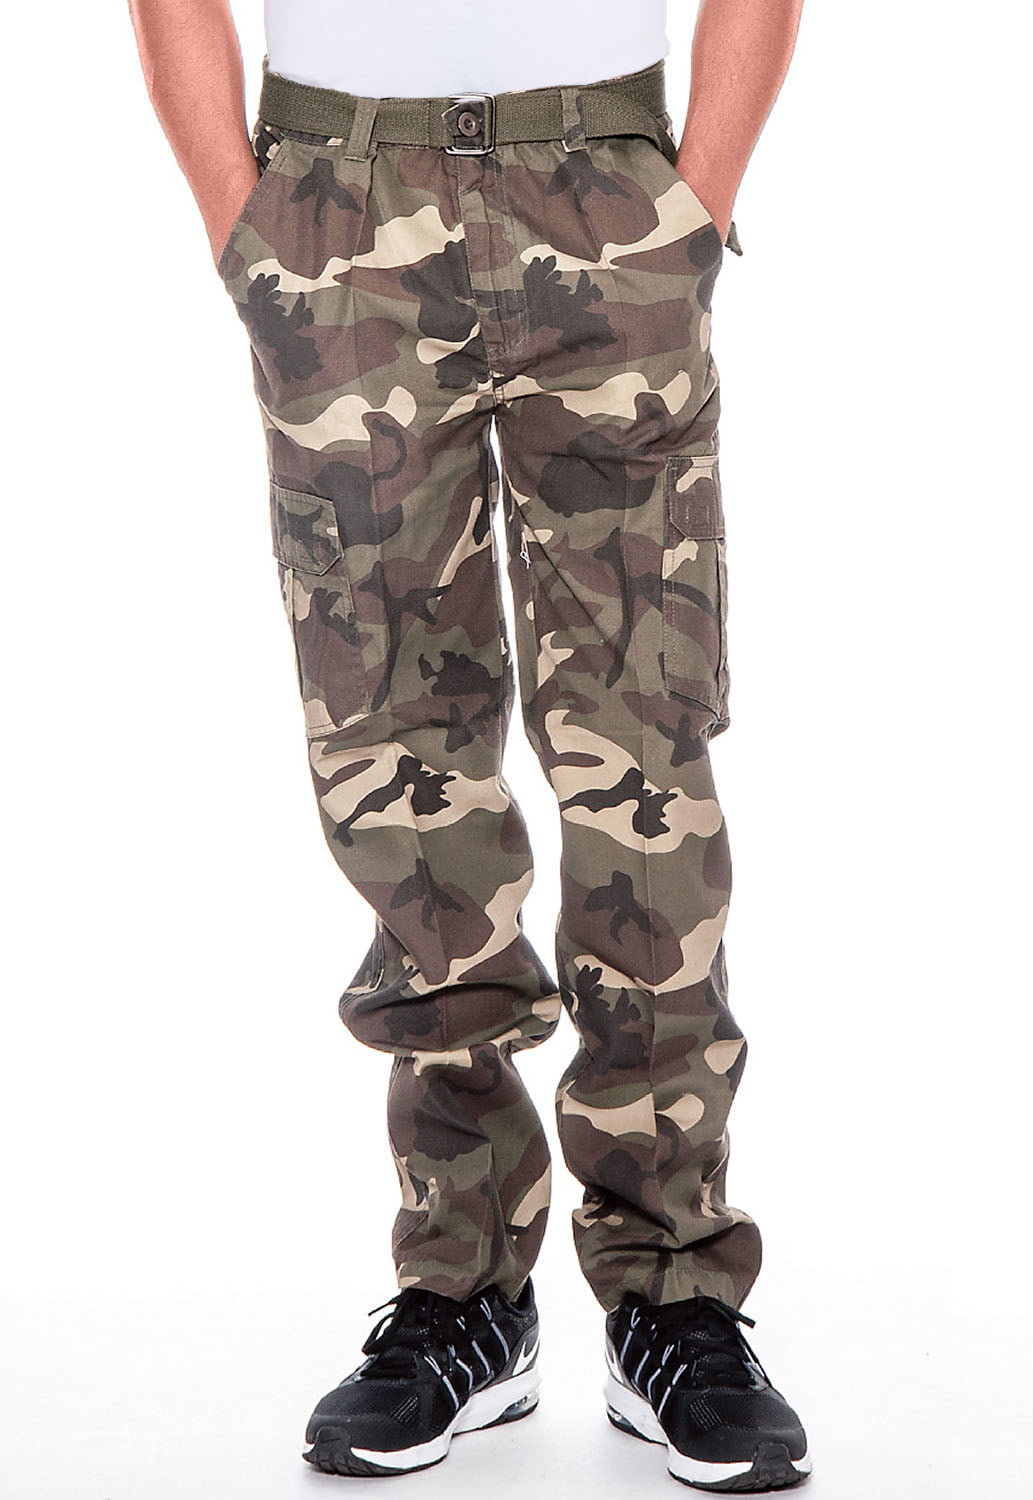 true rock men's camo cargo pants-jungle camo 7504-38 x 32 - Walmart.com